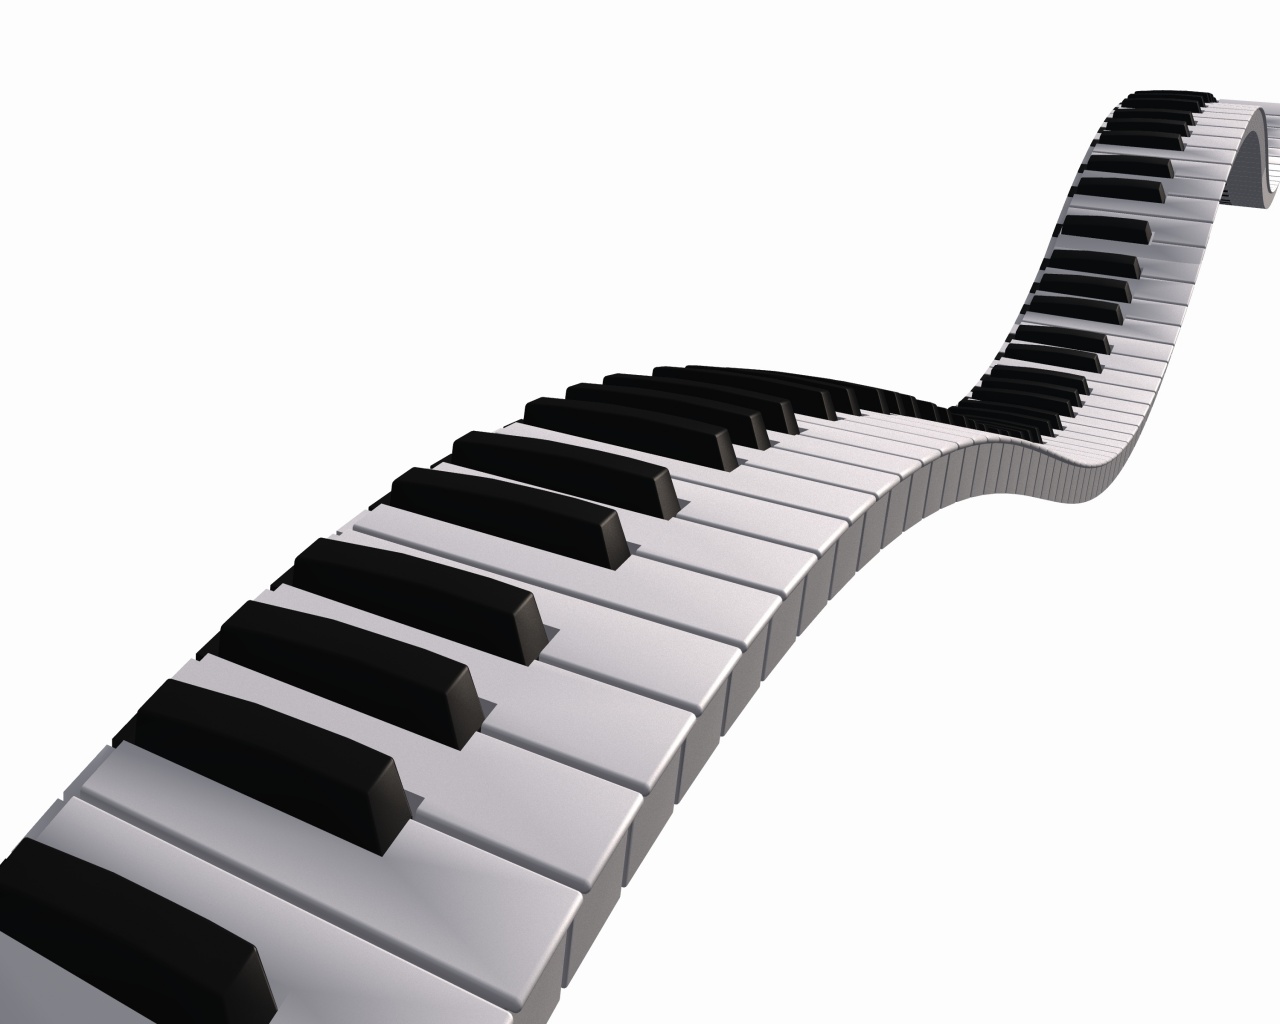 Cartoon Piano Keys - Cliparts.co